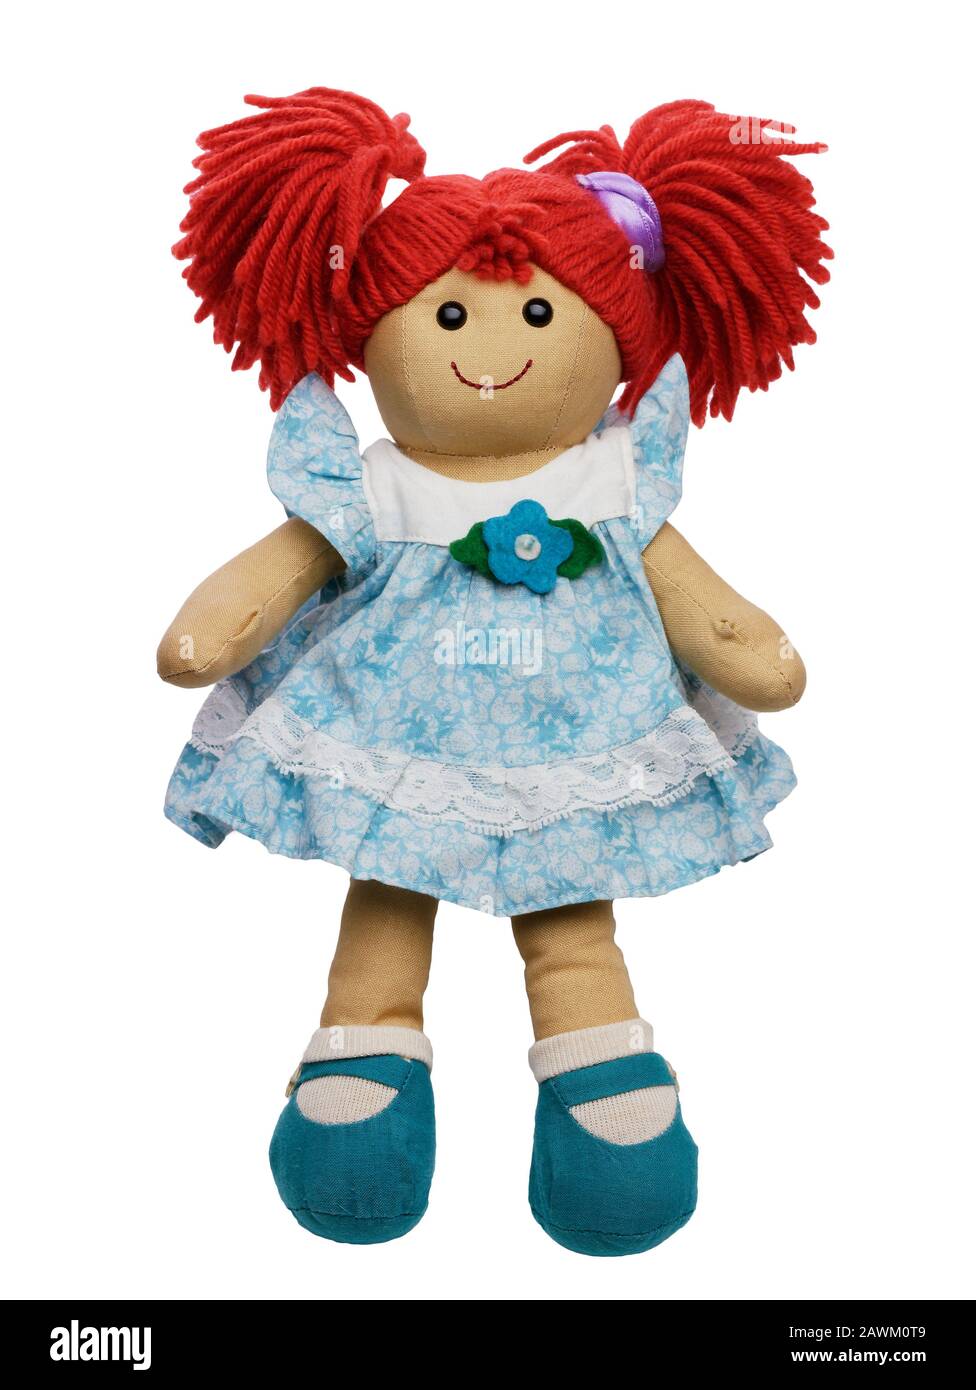 bambola ragdoll capelli rossi cute sorridente isolato su bianco Foto Stock